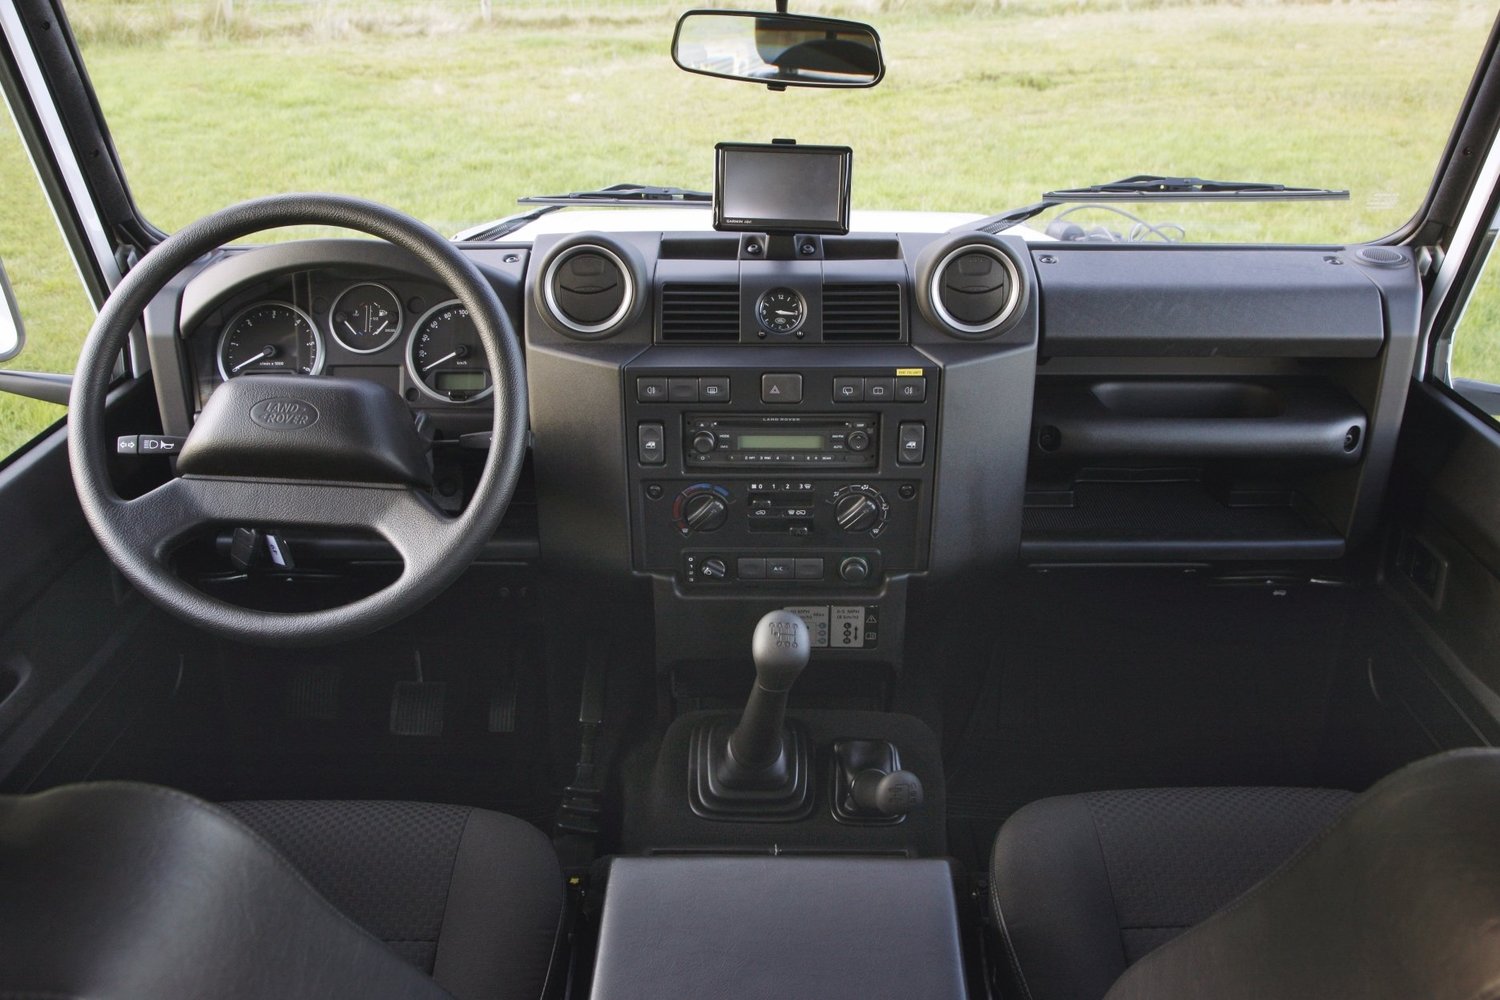 пикап Land Rover Defender 1983 - 2016г выпуска модификация 2.2 MT (122 л.с.) 4×4